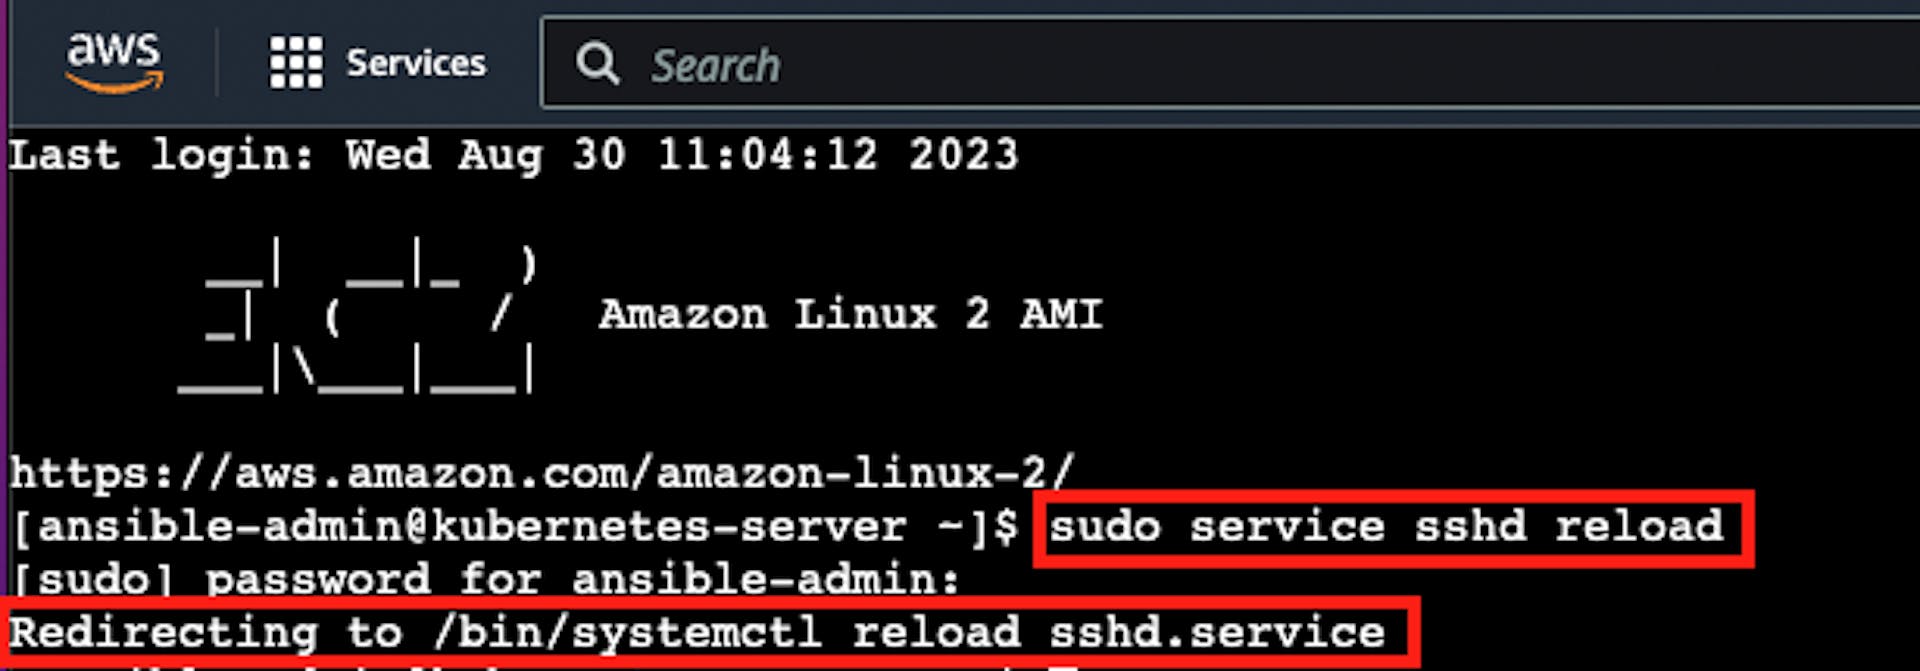 SSHD 다시 로드 결과에 대한 포인터가 있는 AWS EC2 Virtual Server 인스턴스 터미널의 스크린샷